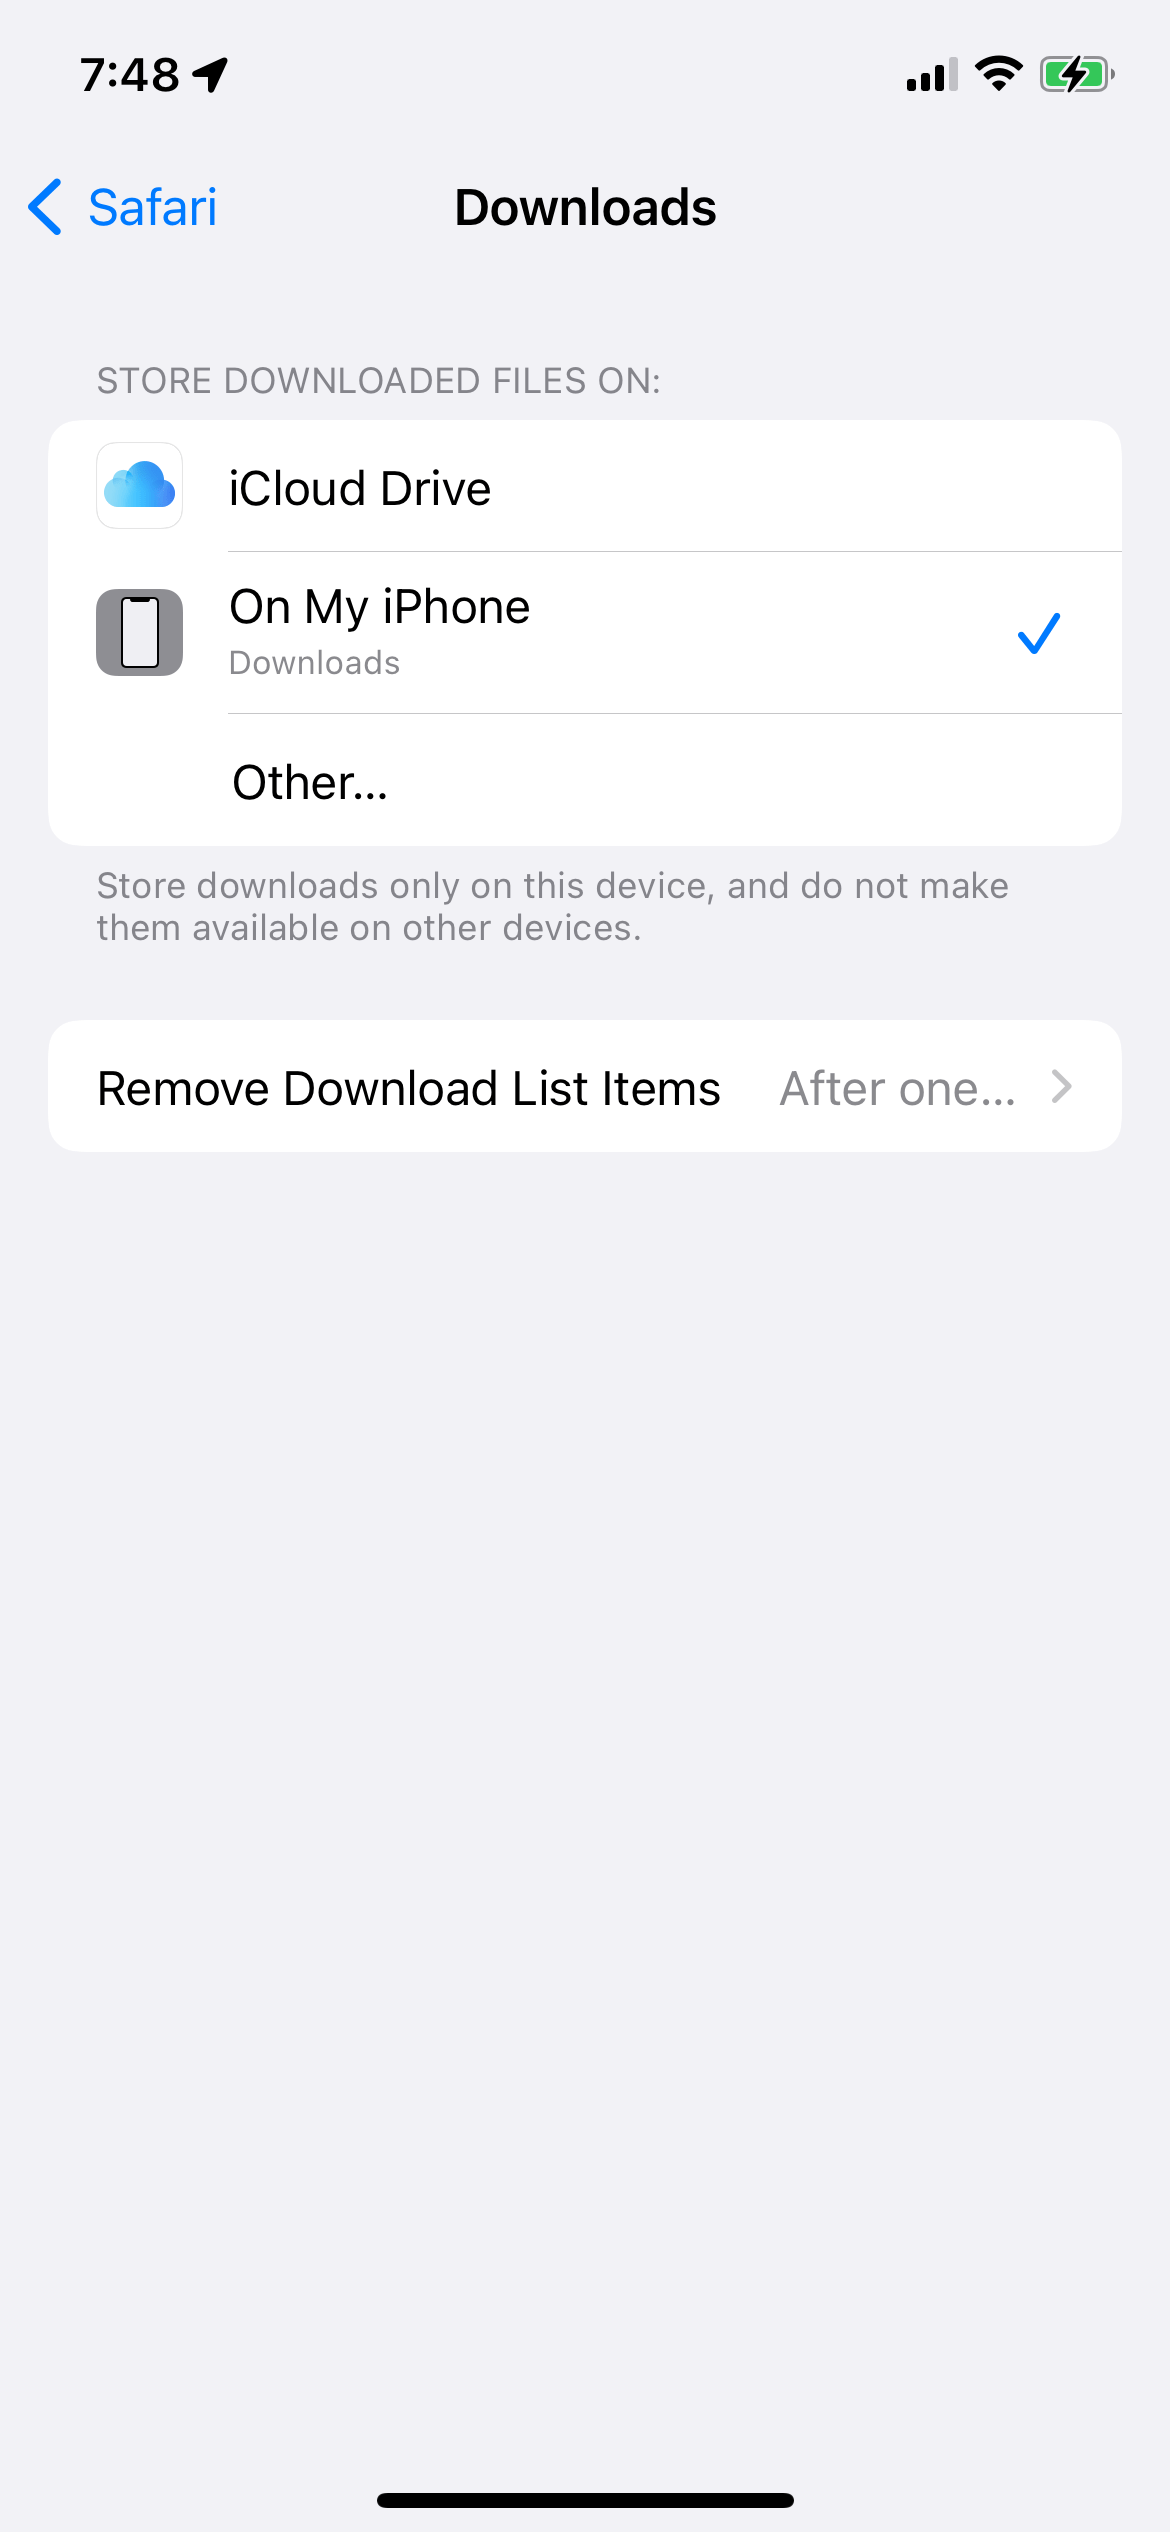 Safari Downloads settings